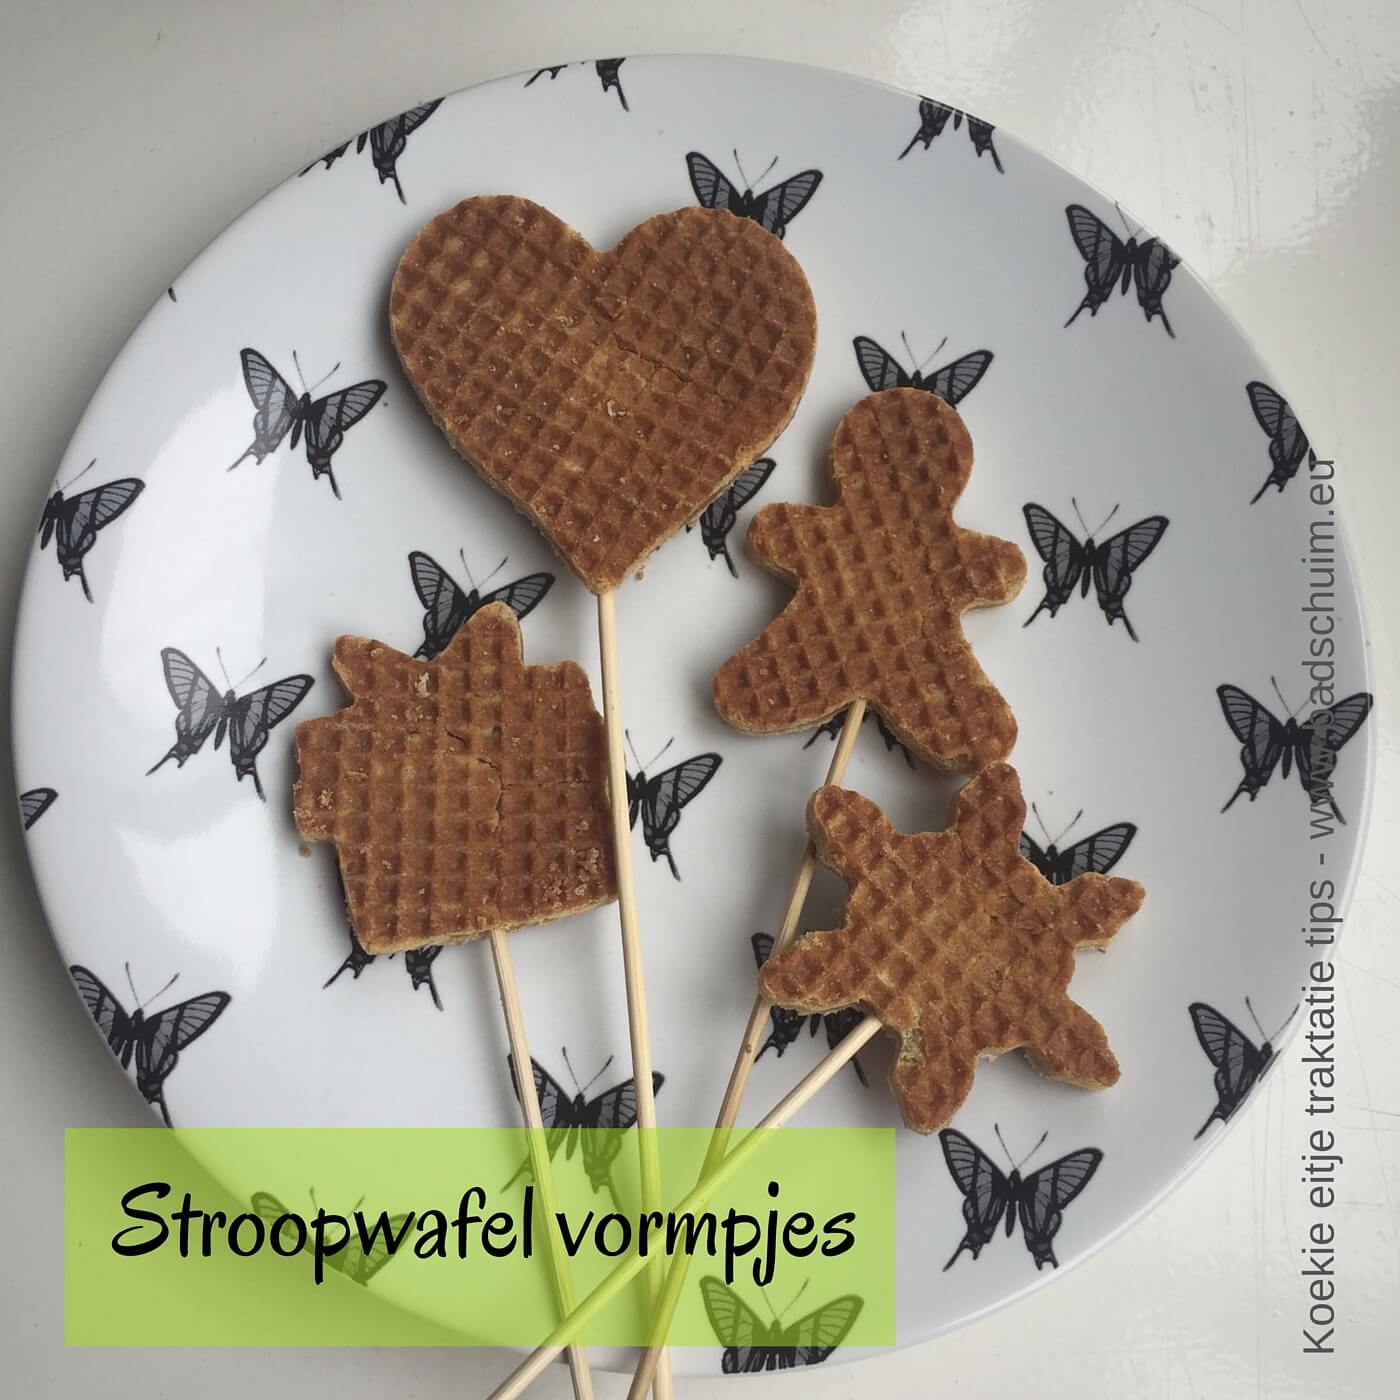 Stroopwafel wormpjes - Koekie eitje traktatie tips I gemaakt door het creatief lifestyle blog Badschuim